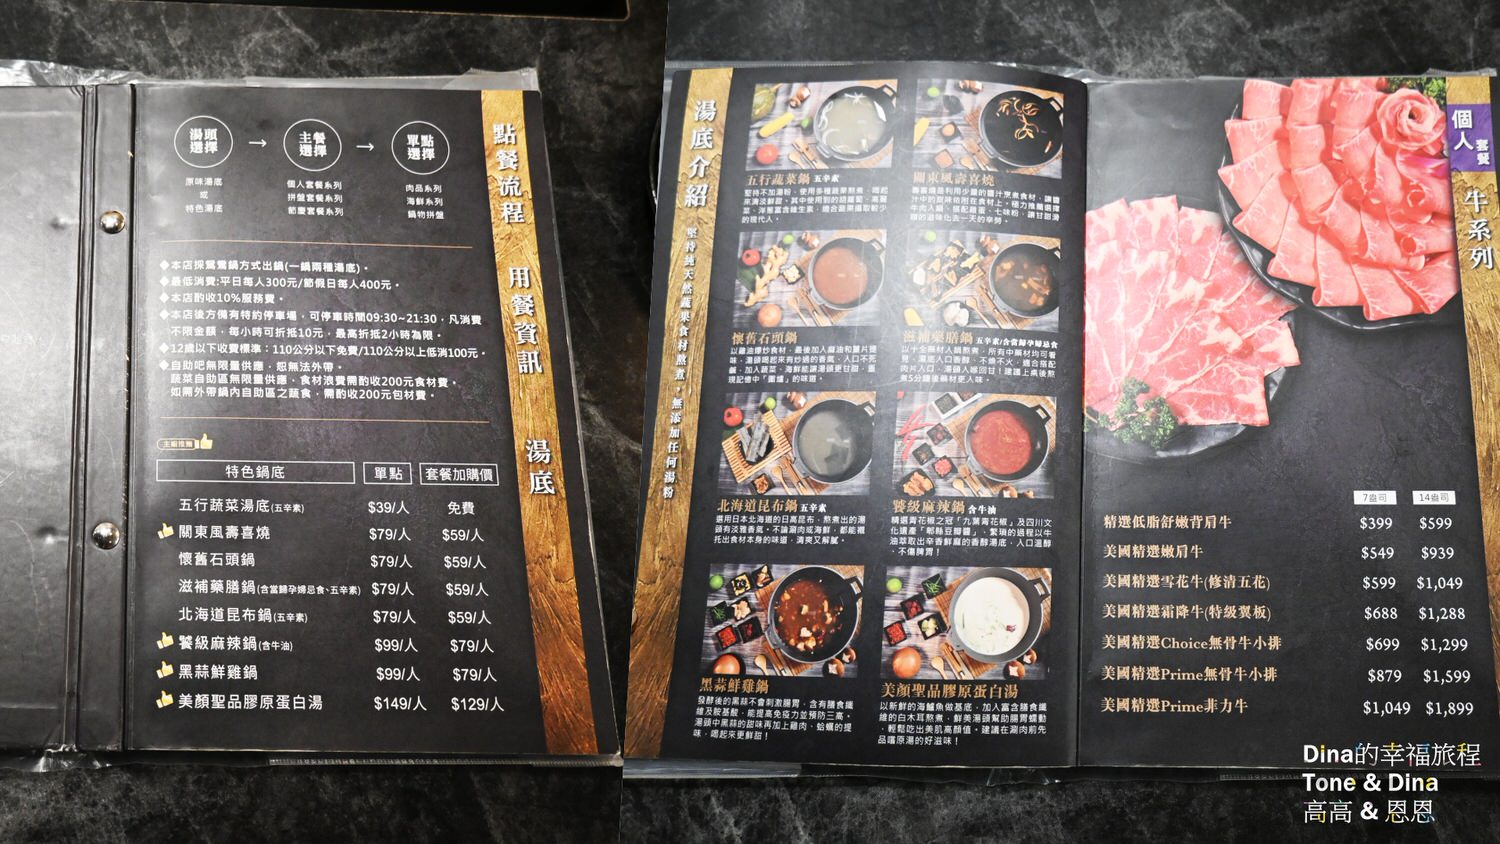 16饌澤原超市火鍋